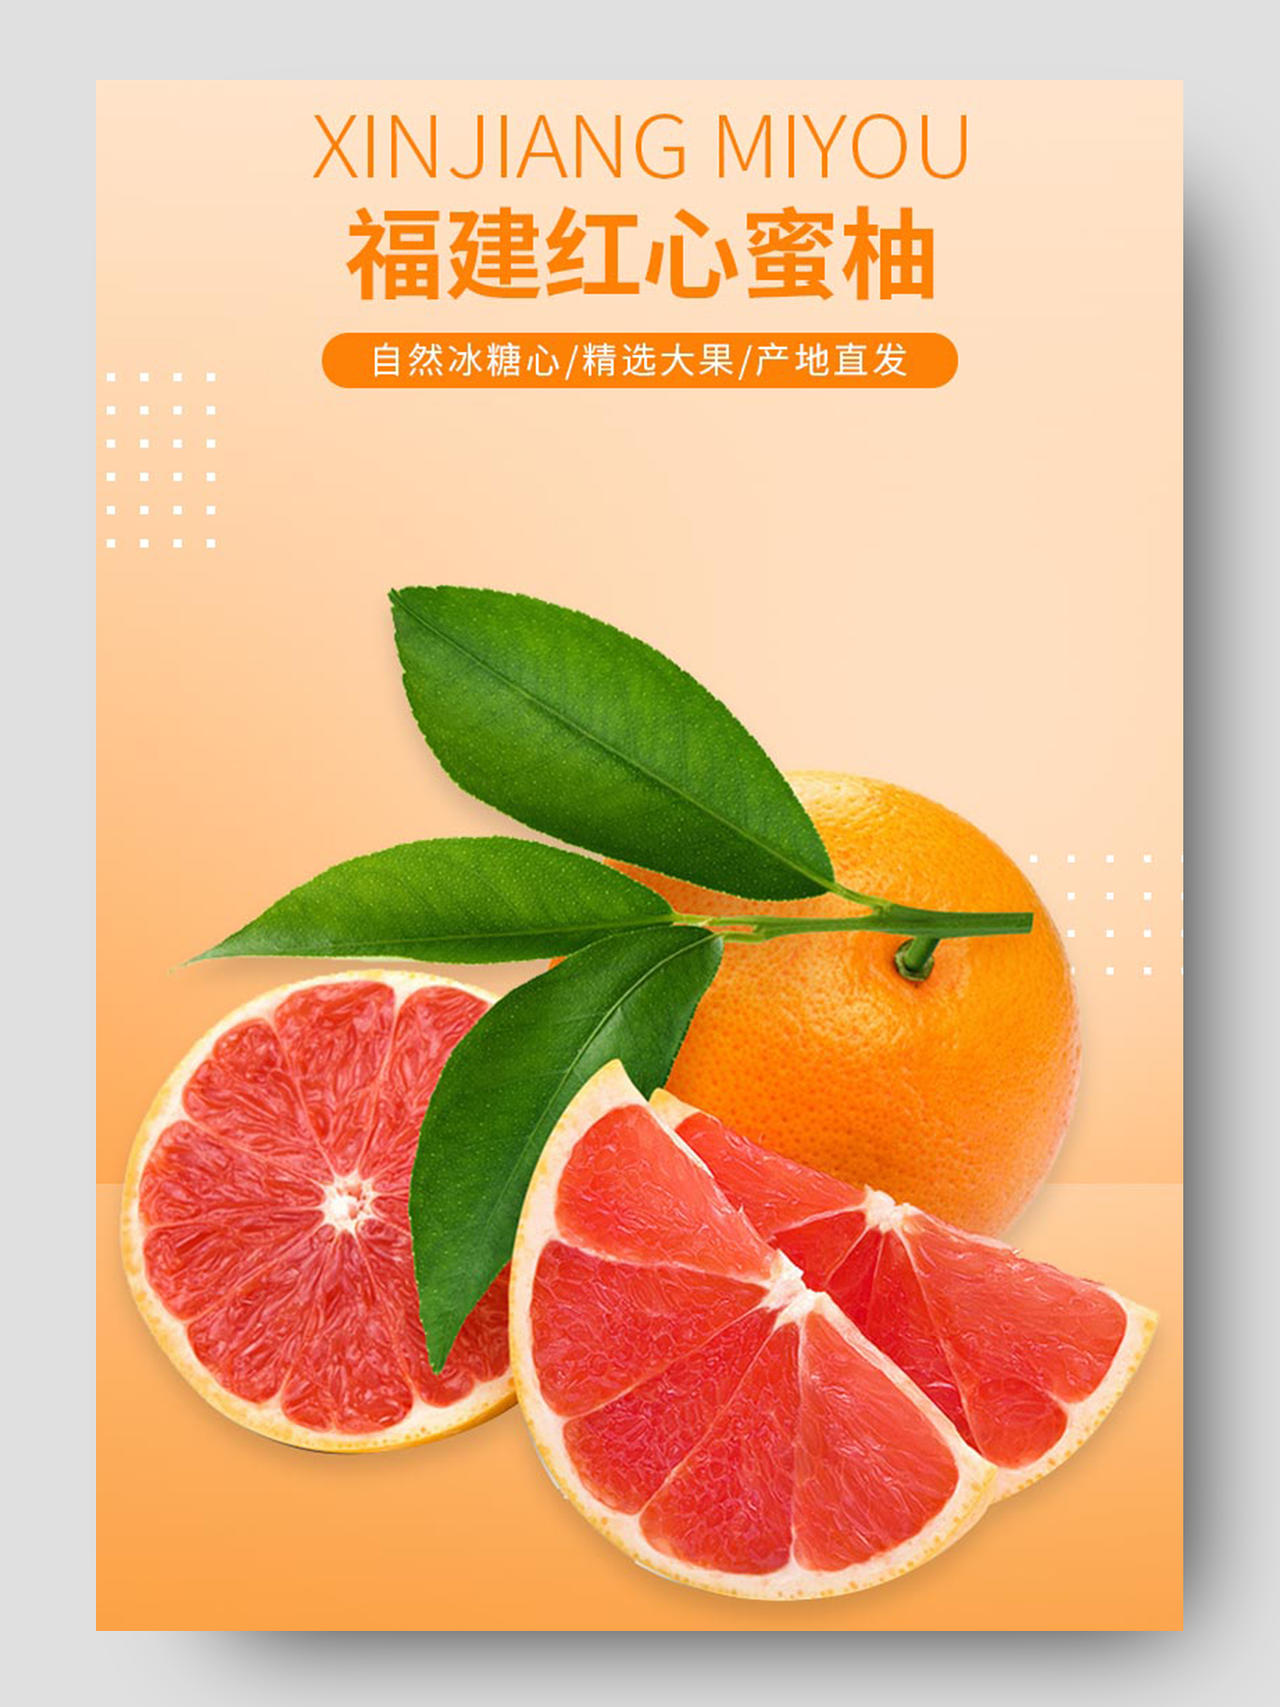 橘色柚子电商淘宝详情页柚子详情页